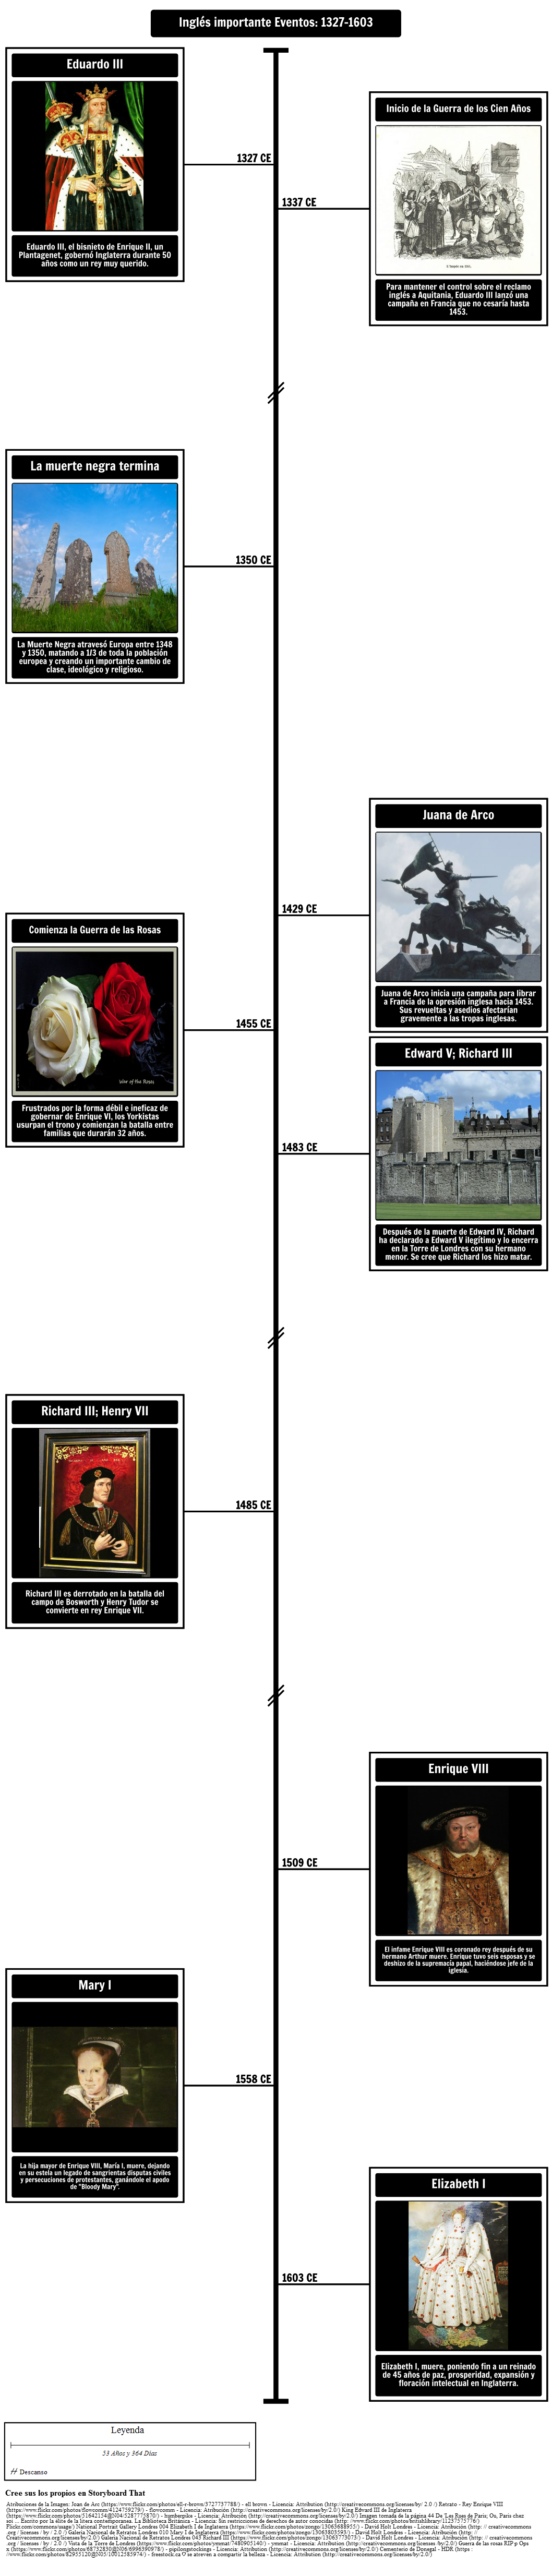 Cronología de eventos importantes en inglés: 1327-1603